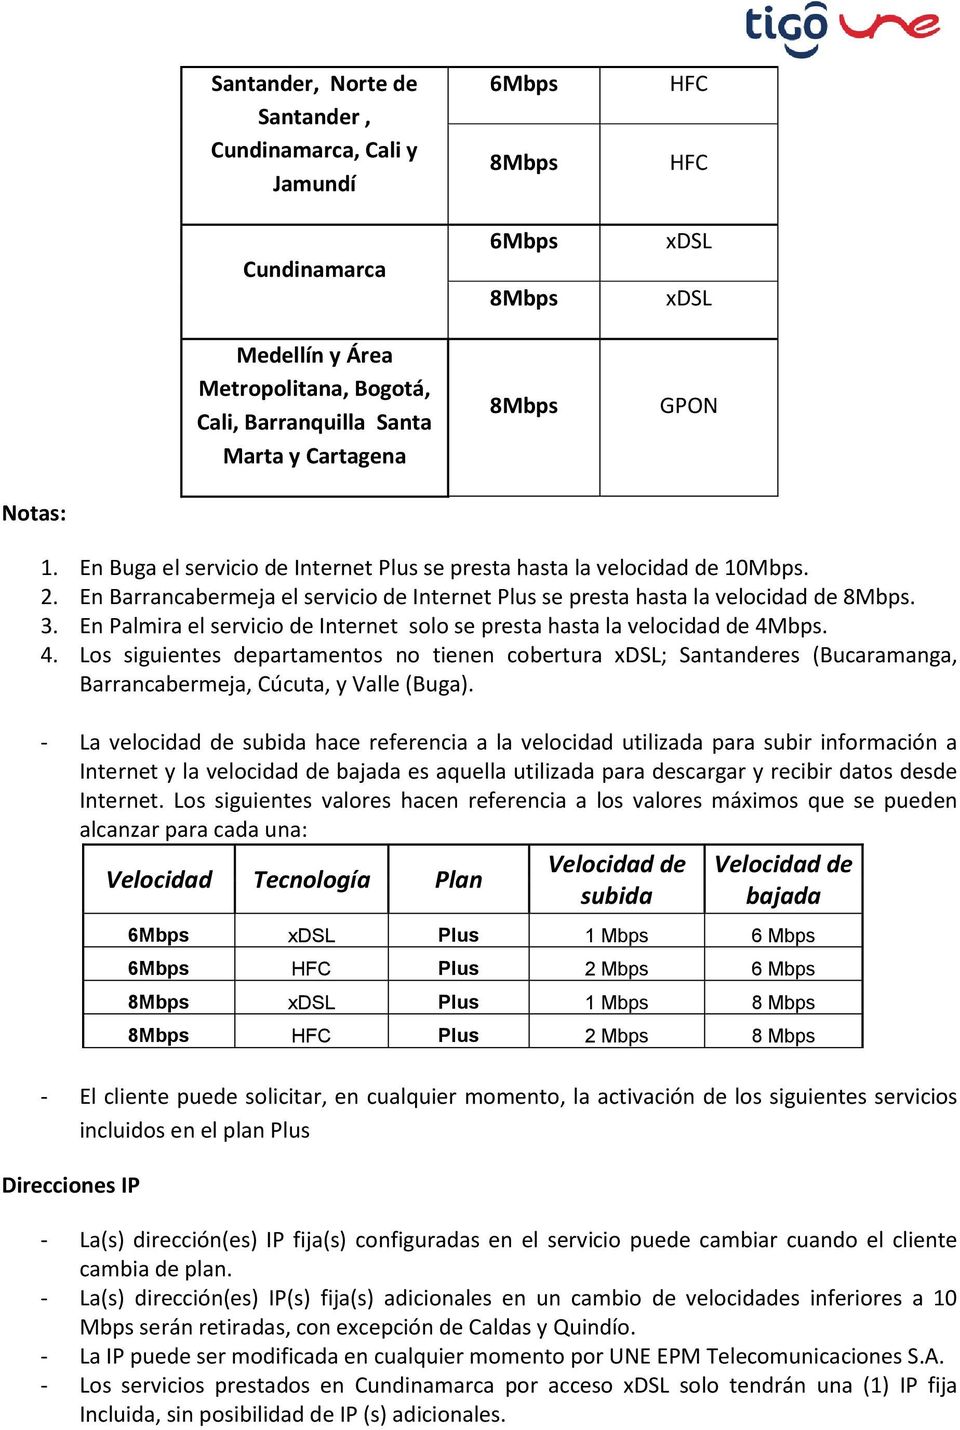 En Palmira el servicio de Internet solo se presta hasta la velocidad de 4Mbps. 4. Los siguientes departamentos no tienen cobertura xdsl; Santanderes (Bucaramanga, Barrancabermeja, Cúcuta, y Valle (Buga).